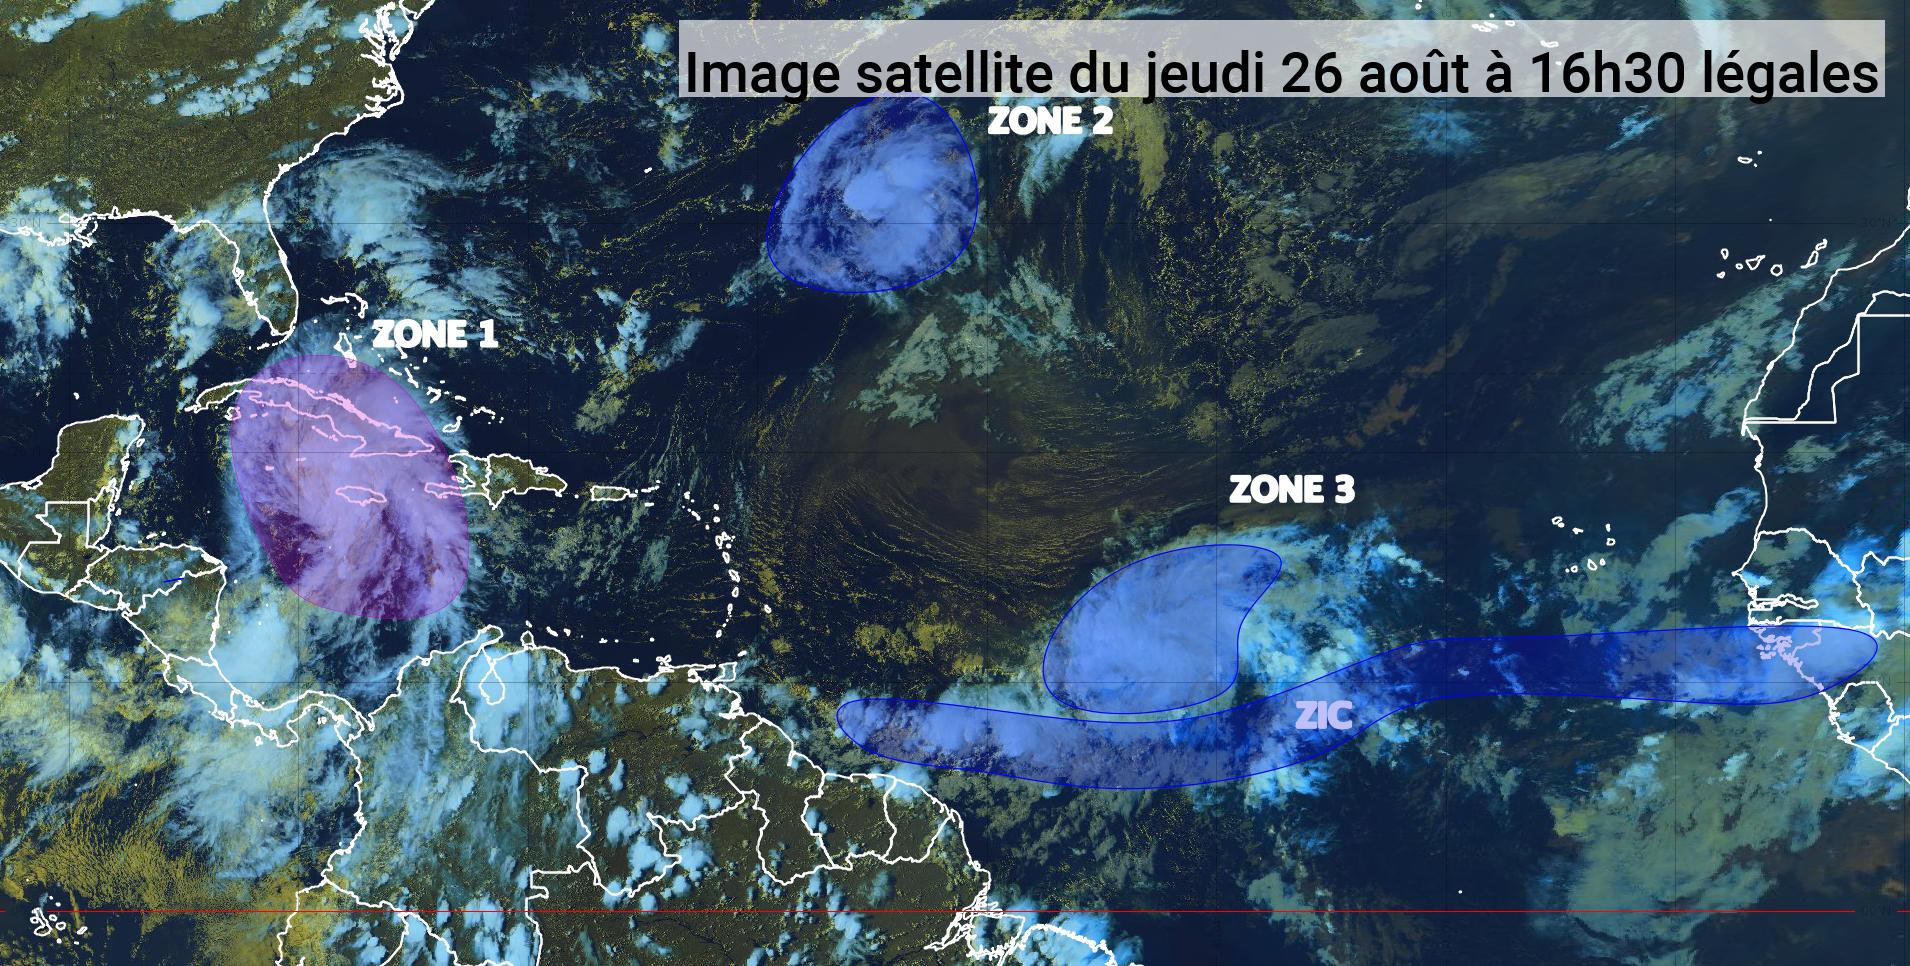     Une onde tropicale au milieu de l'Atlantique pourrait devenir un cyclone (bulletin du 26/08/21)

